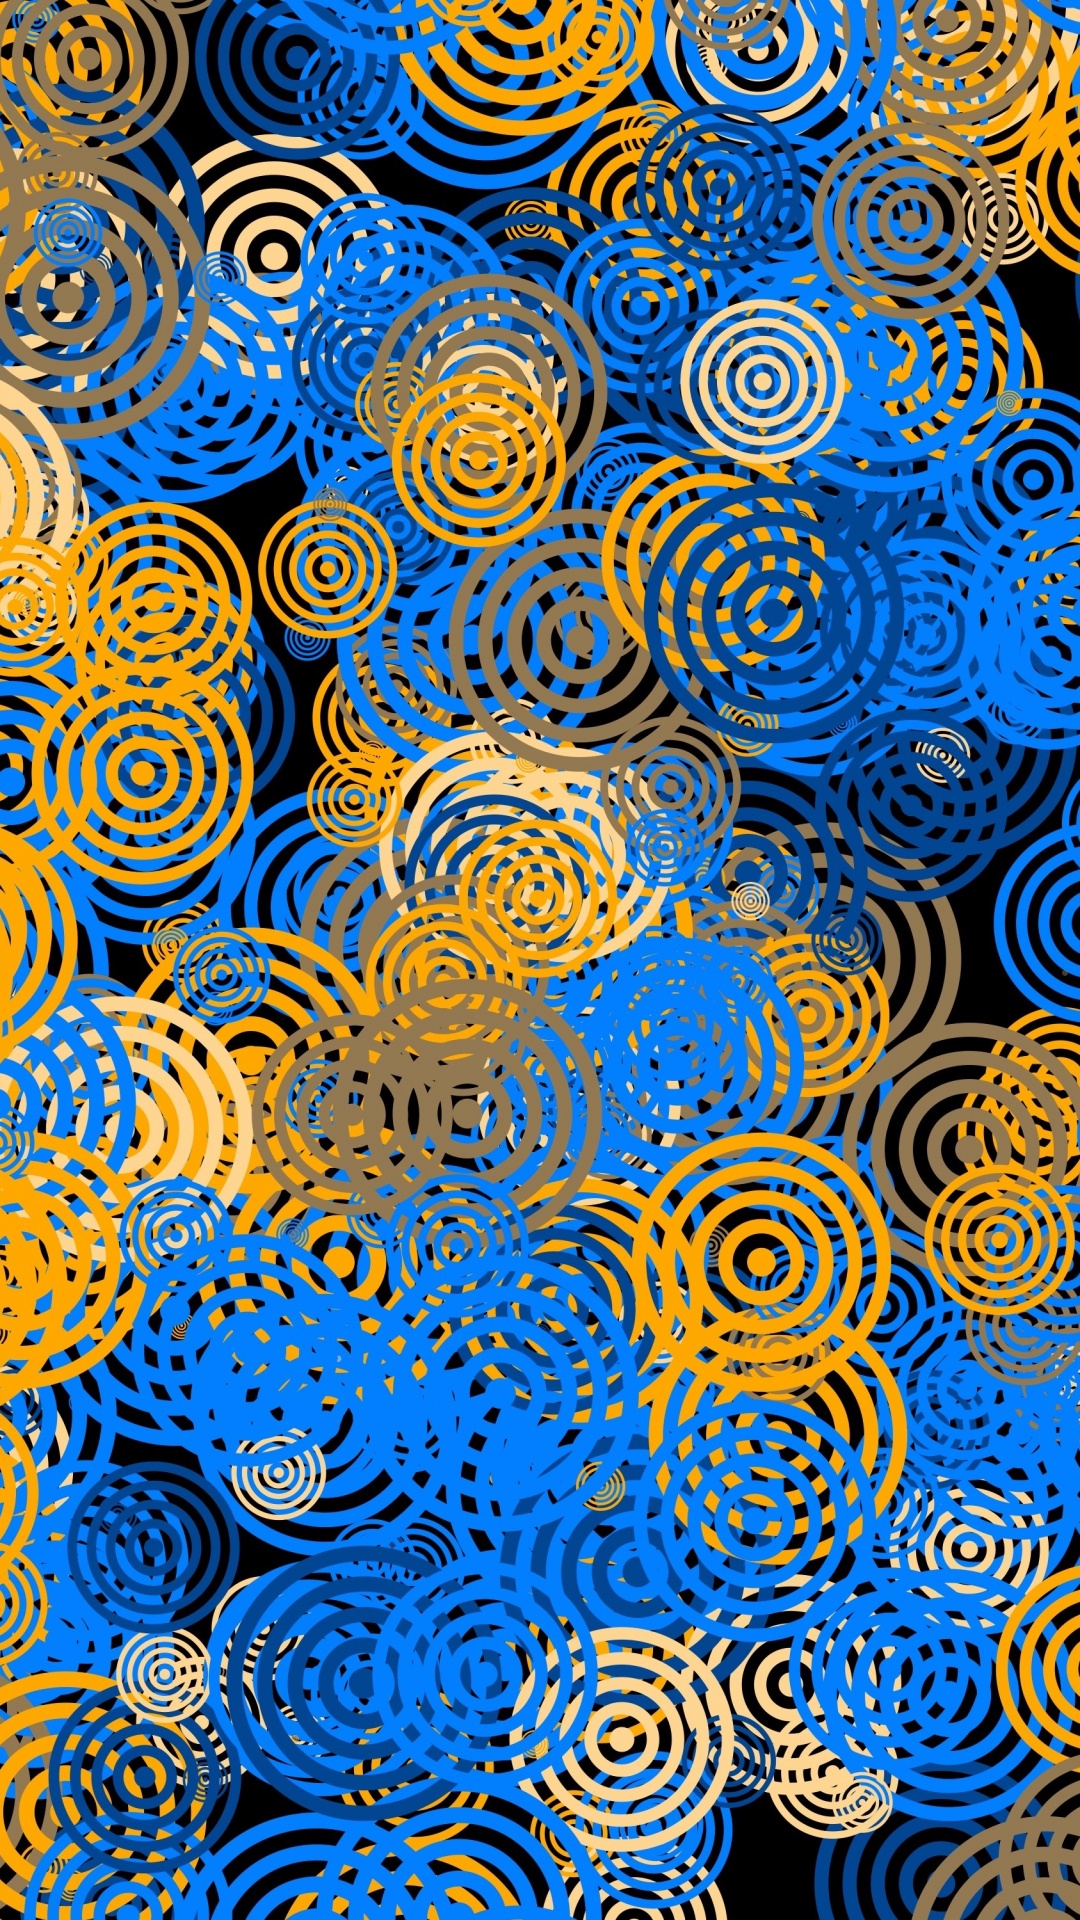 Décor Rond Bleu et Jaune. Wallpaper in 1080x1920 Resolution